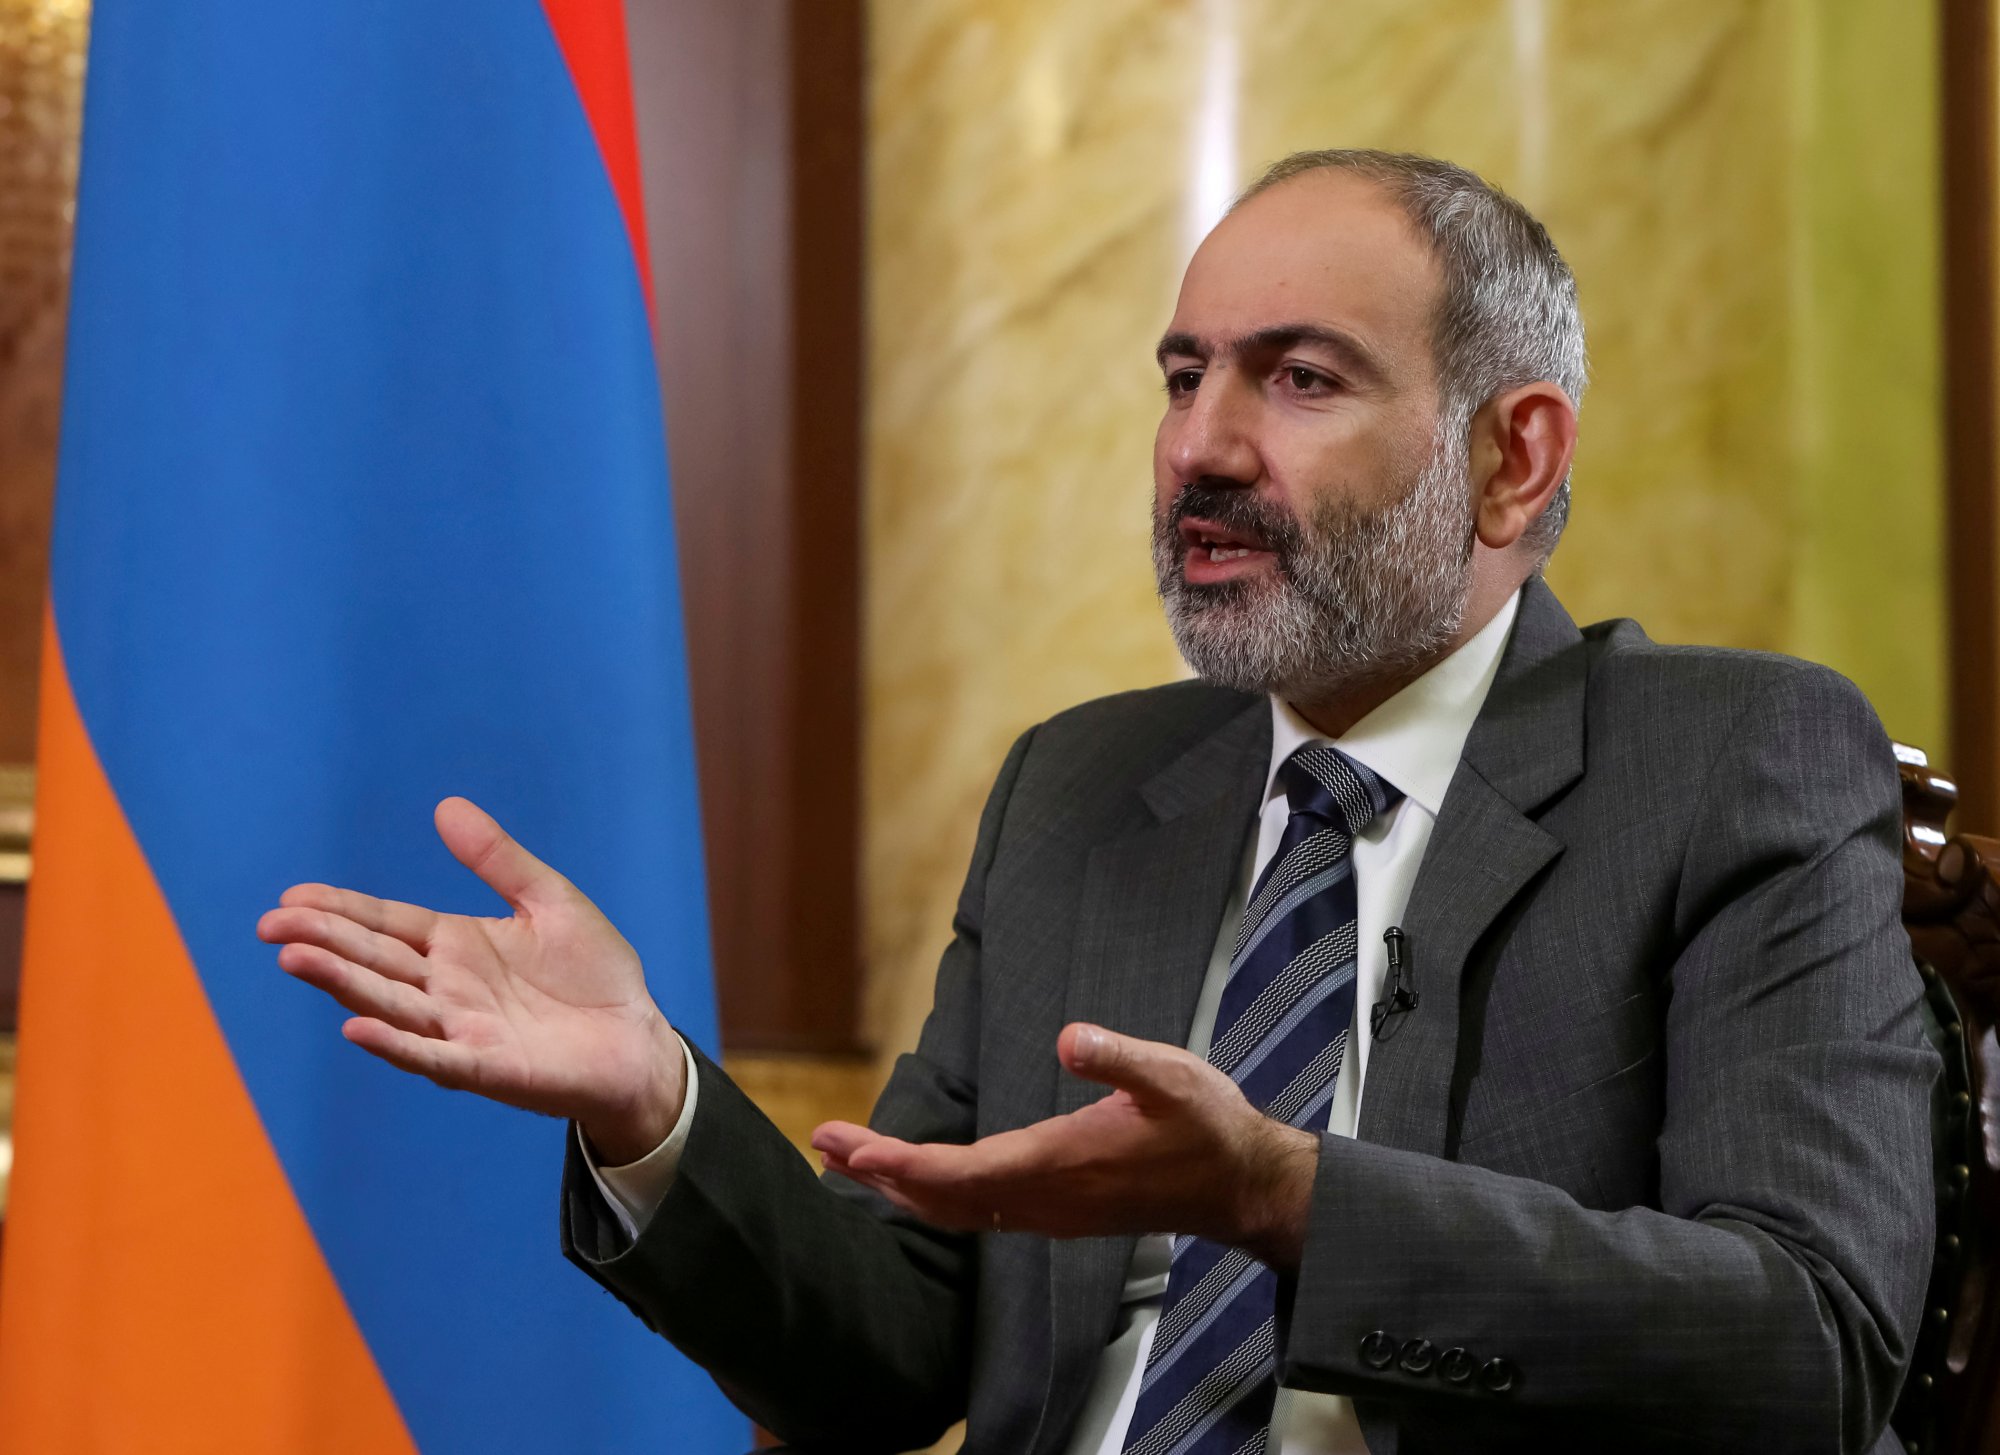 Αρμενία: Δεν είμαστε σύμμαχοι της Ρωσίας στον πόλεμο της Ουκρανίας, λέει ο Πασινιάν